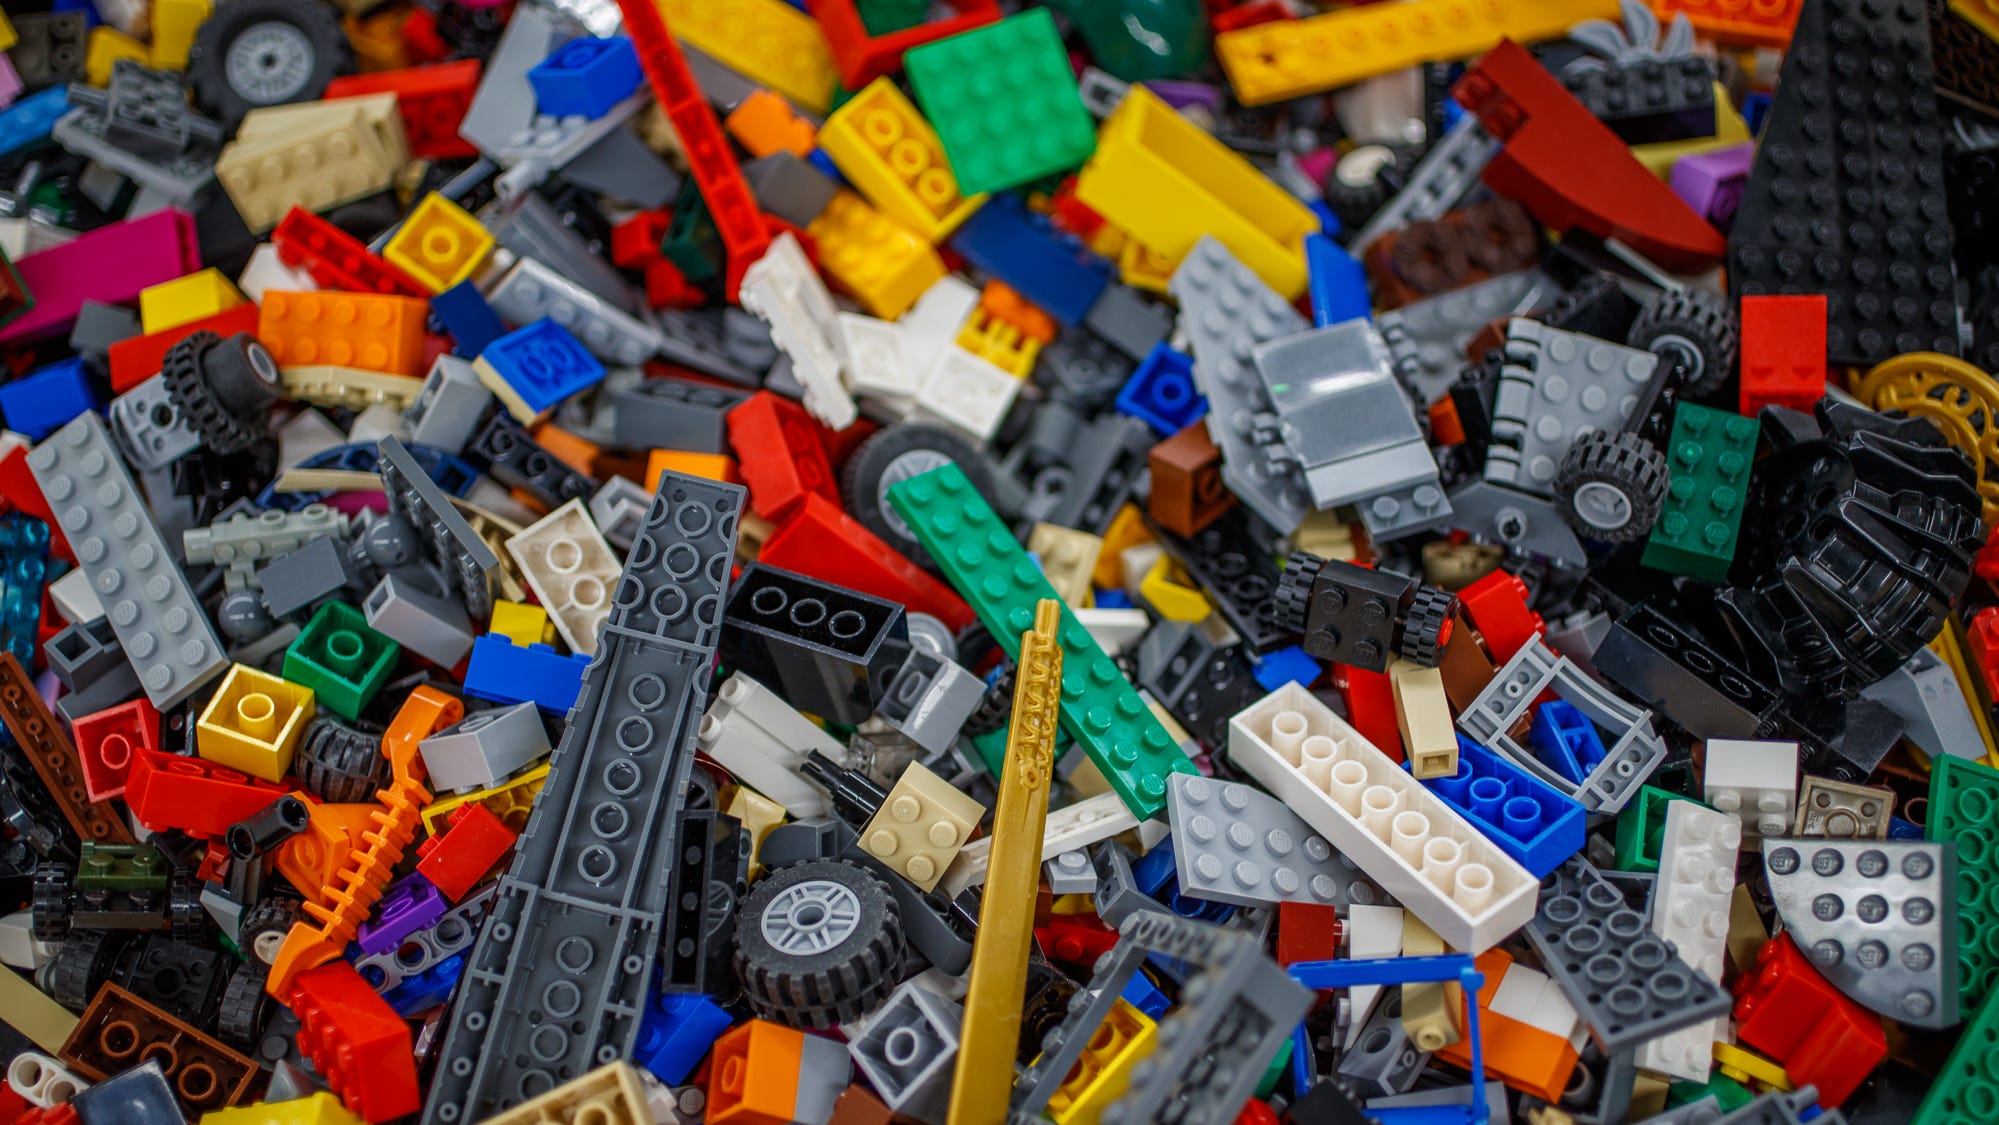 LEGO announces plans to build $1B central plant